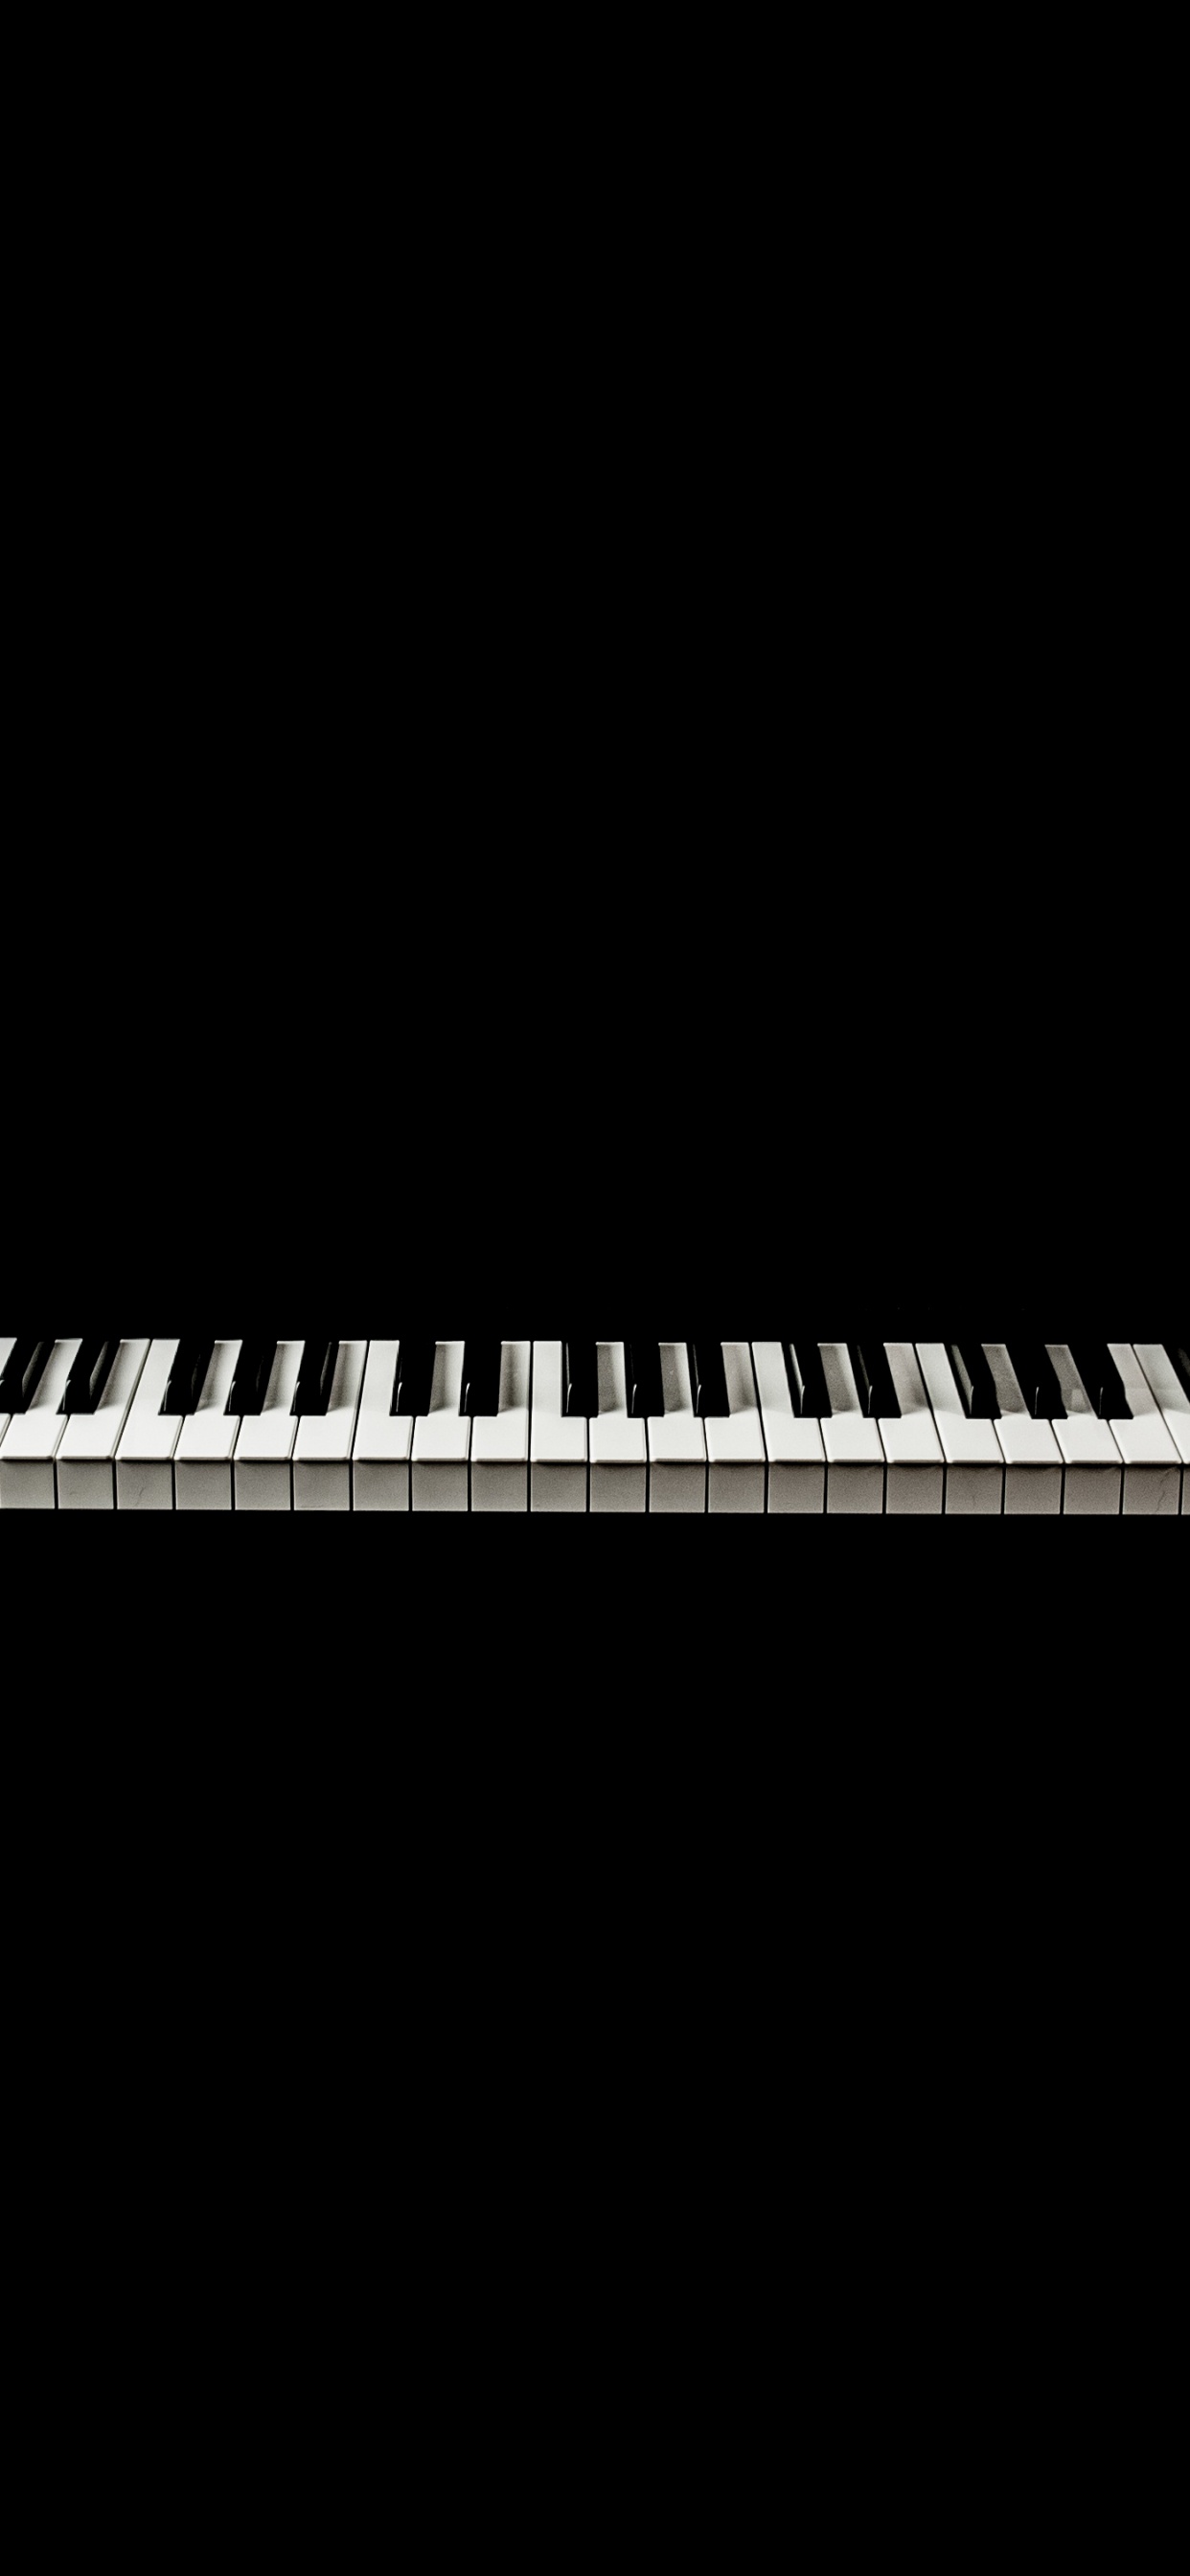 Teclado Musical, Piano Digital, Piano Eléctrico, Piano, Teclado. Wallpaper in 1242x2688 Resolution